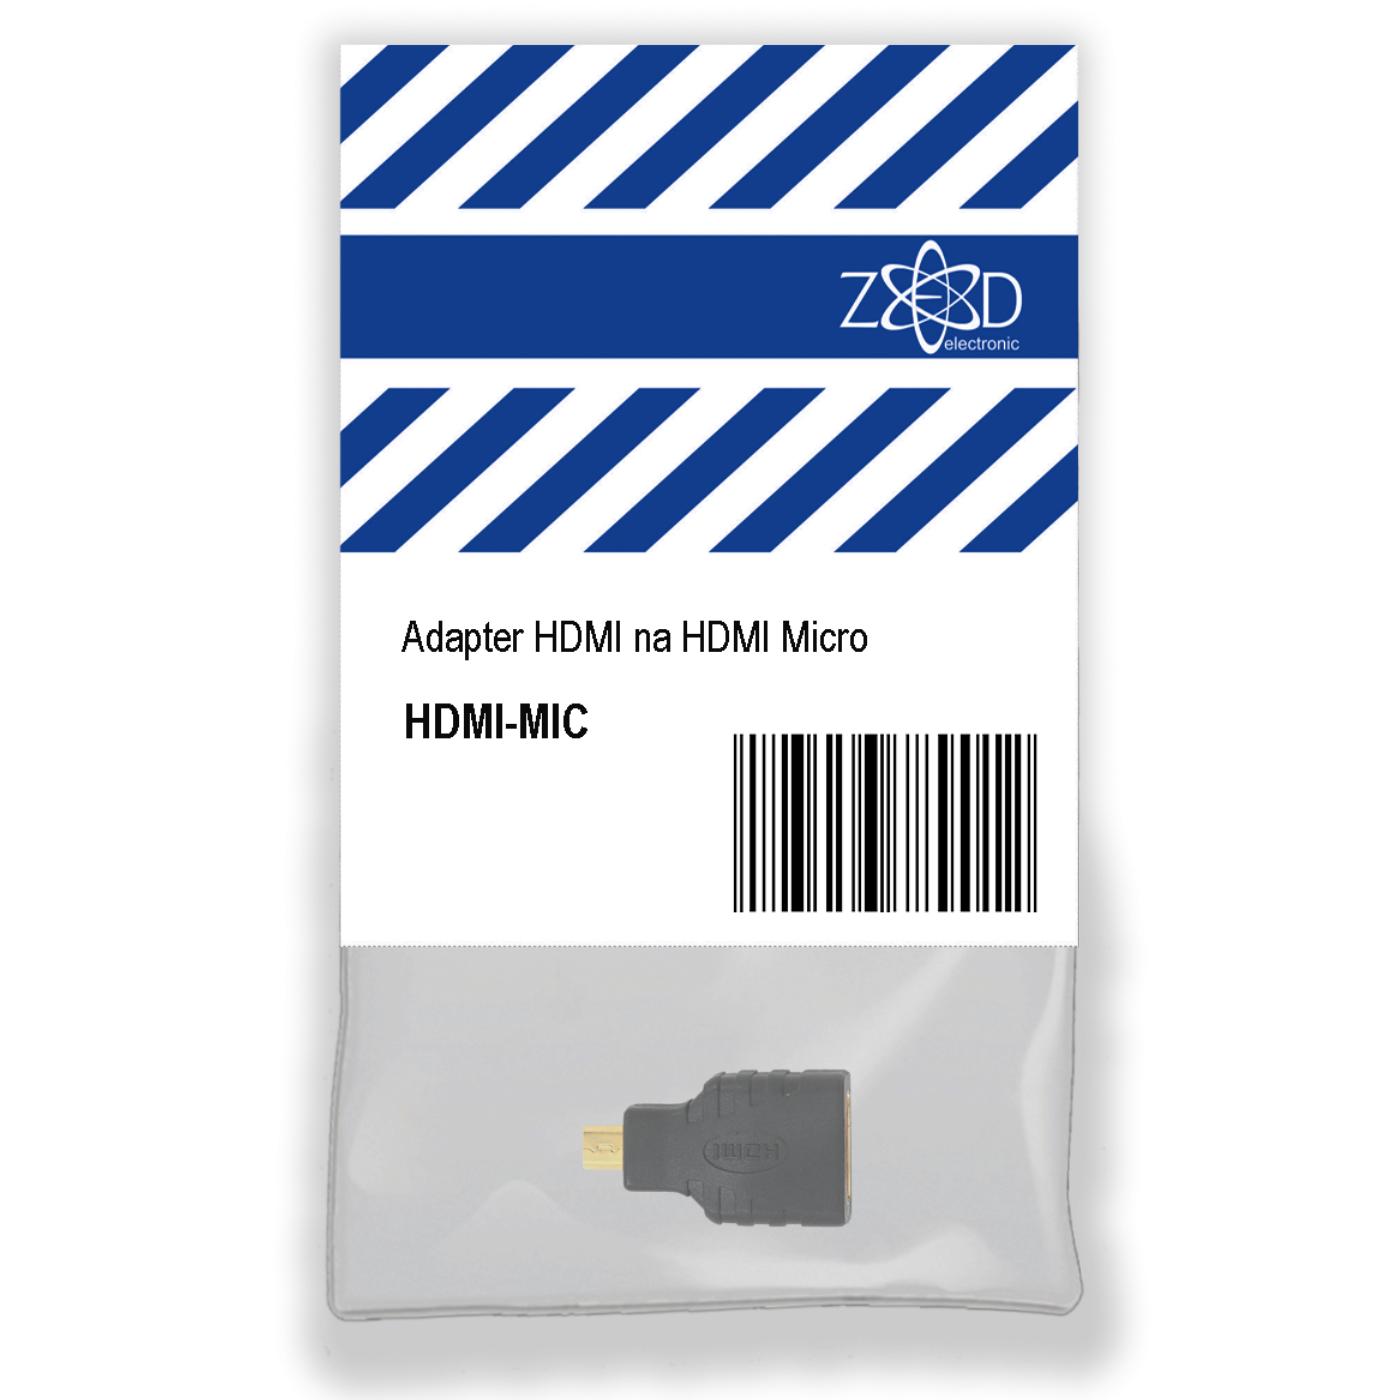 Adapter HDMI na HDMI Micro